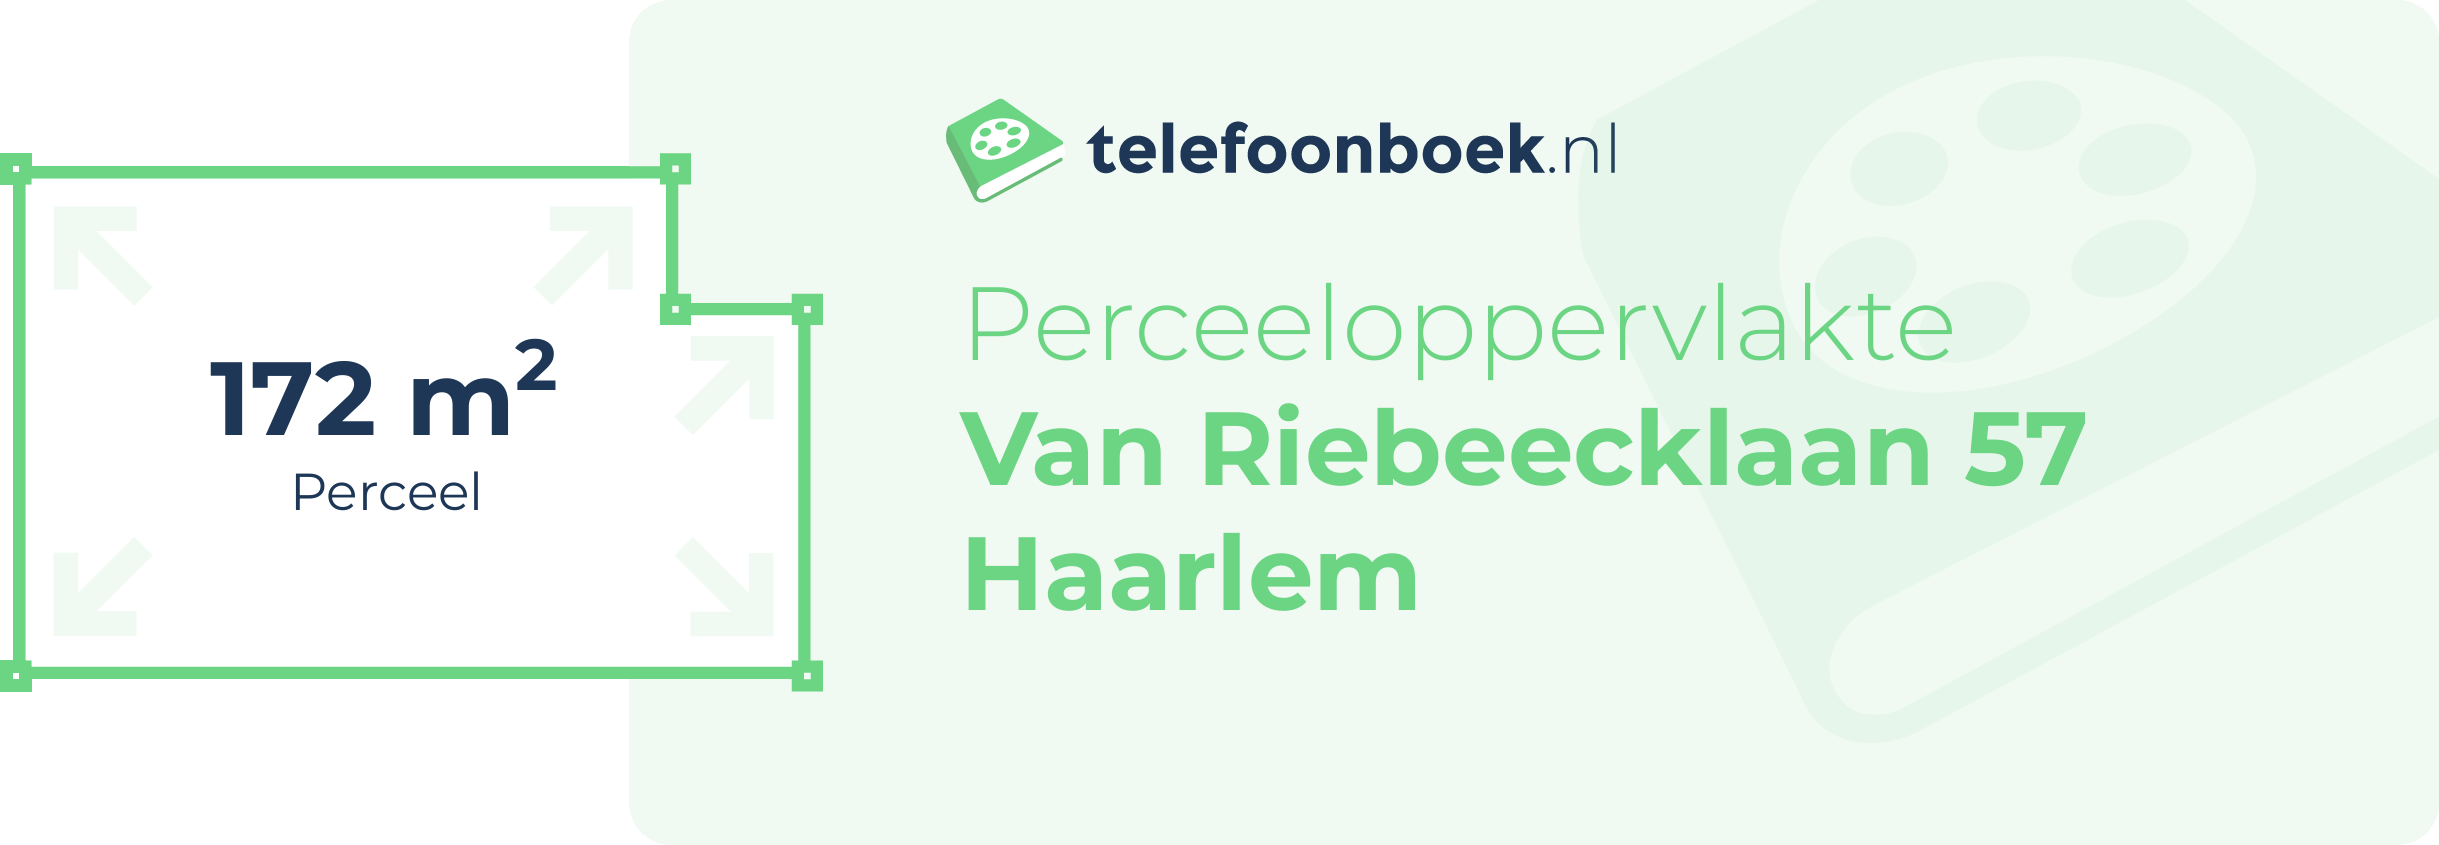 Perceeloppervlakte Van Riebeecklaan 57 Haarlem